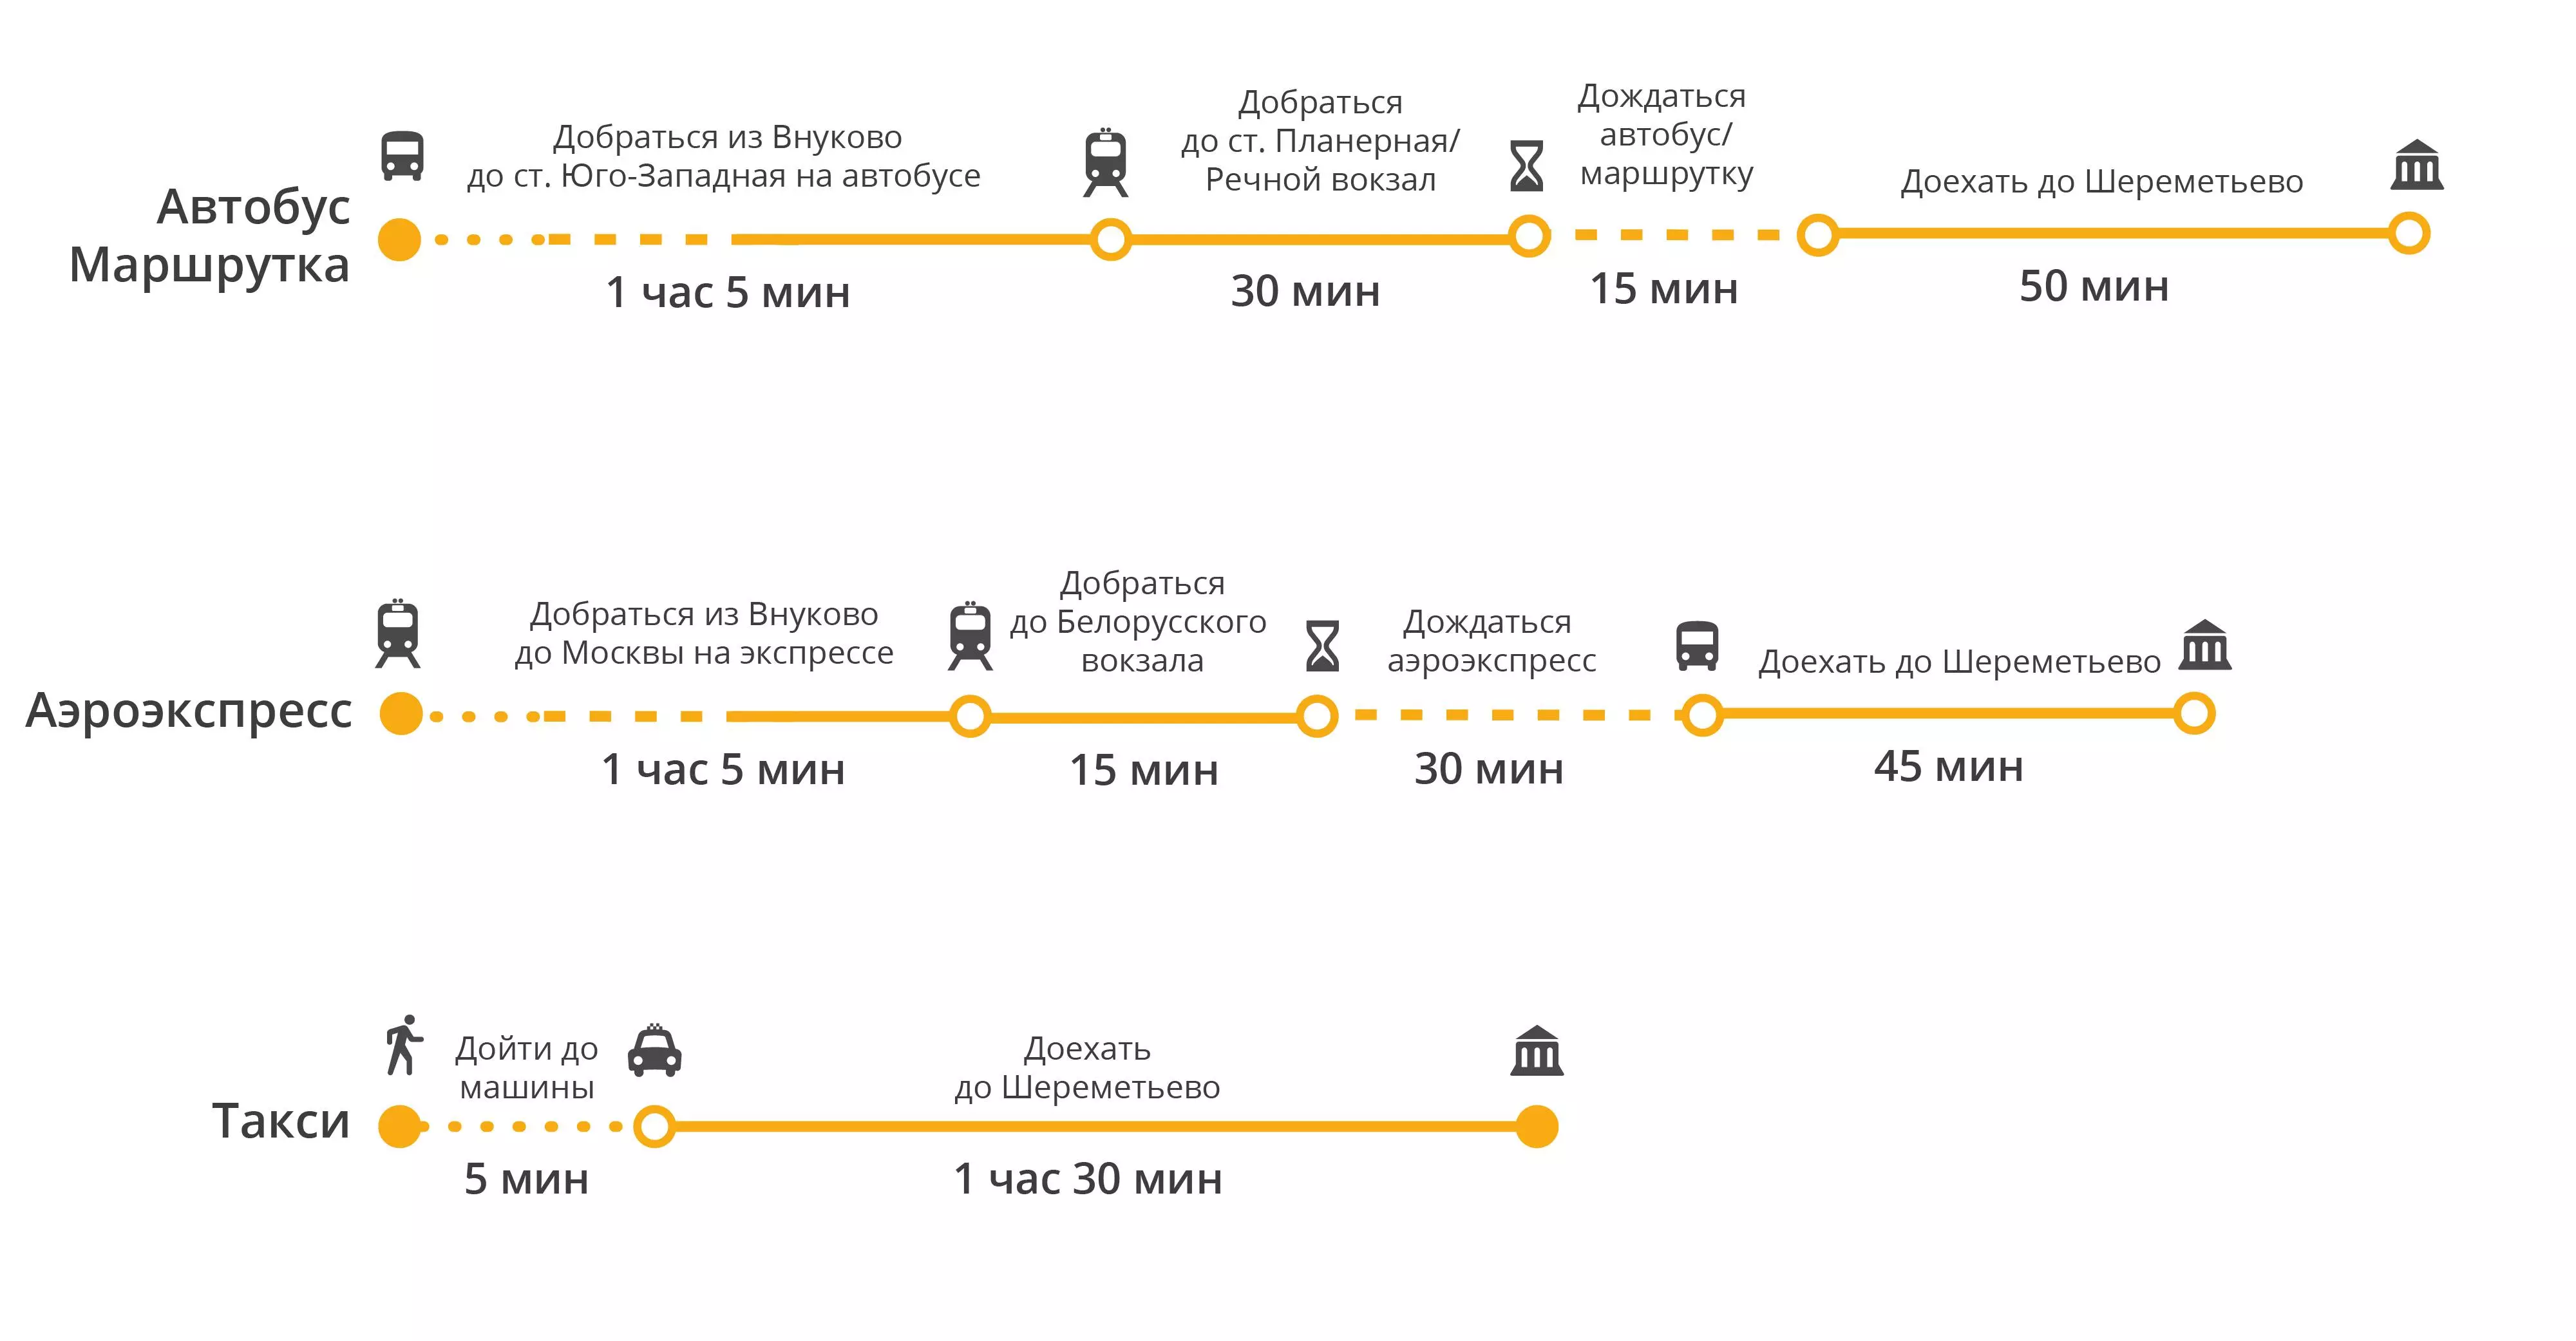 Как добраться из внуково в шереметьево: аэроэкспресс, метро, автобус, на машине. расстояние, цены на билеты и расписание 2020 на туристер.ру